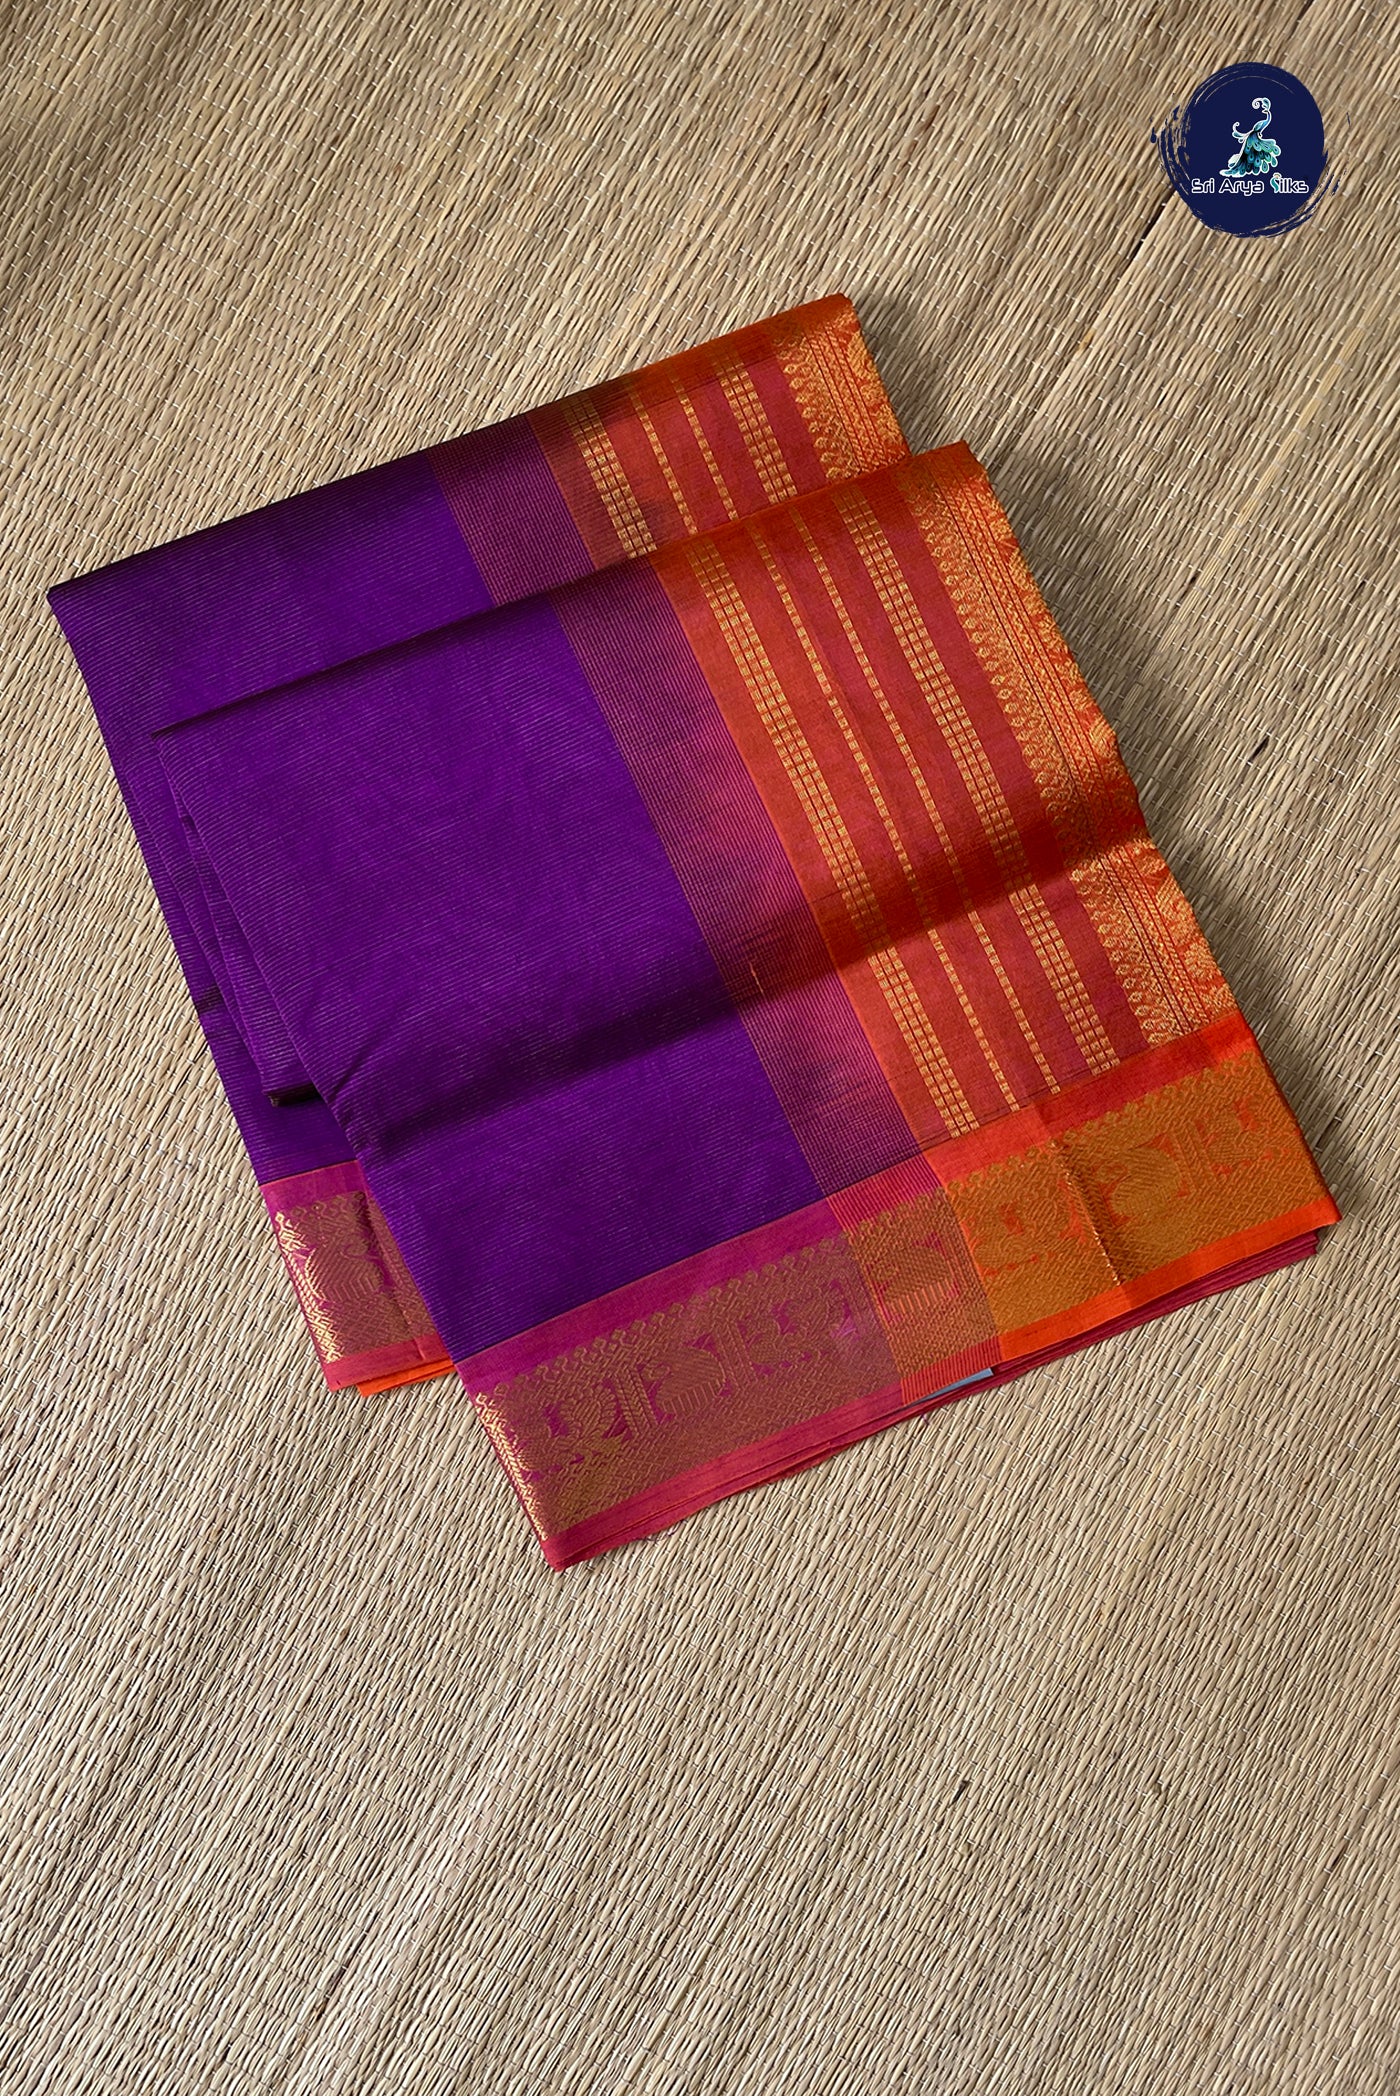 Purple Vaira Oosi Silk Cotton Saree With Vaira Oosi Pattern